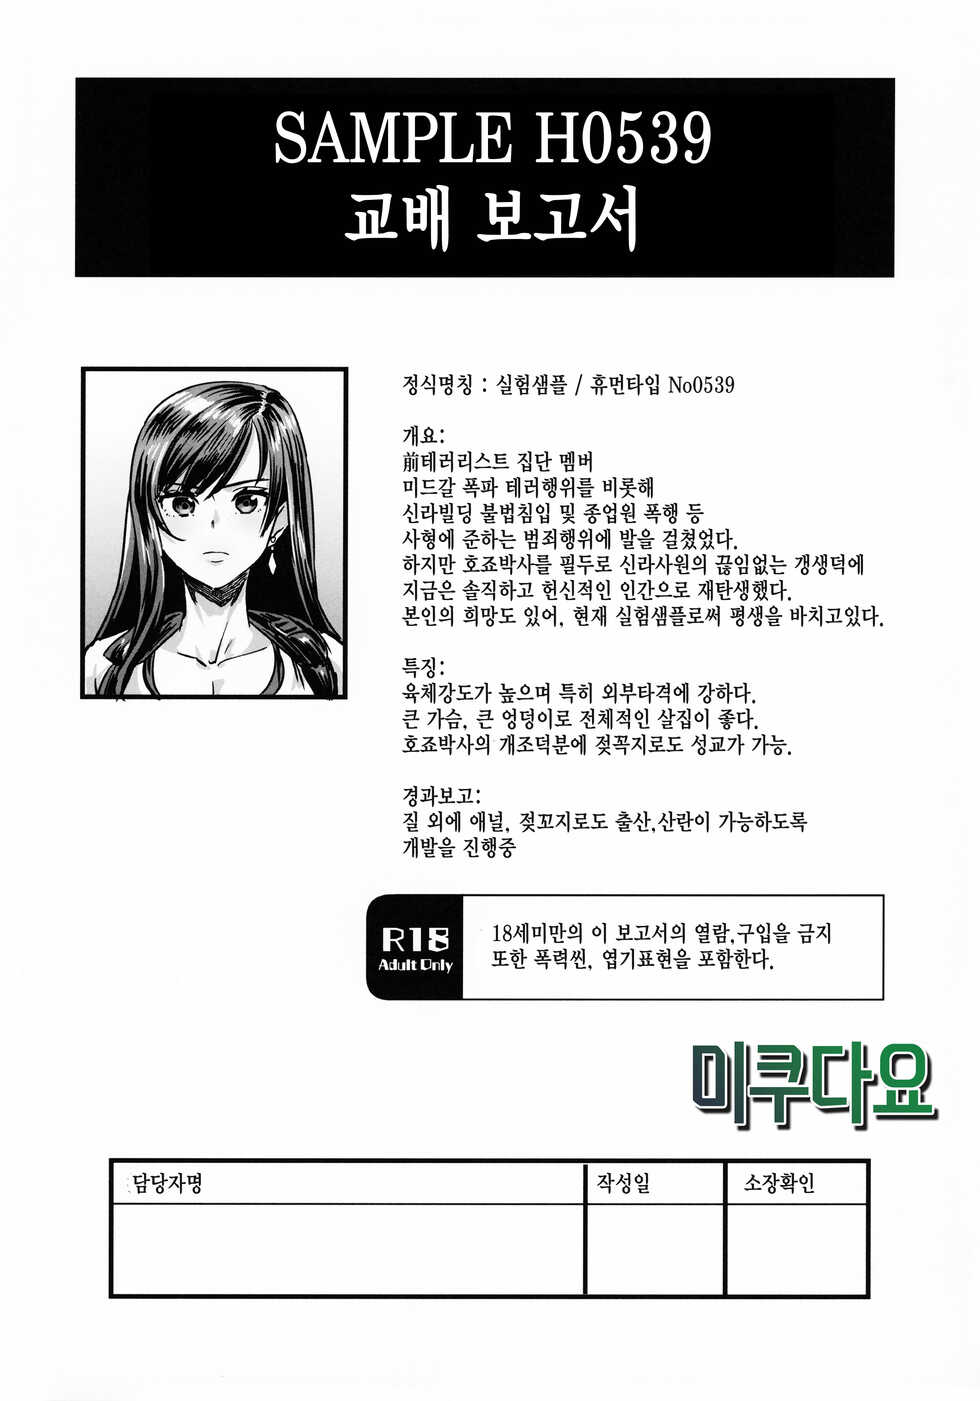 (C99) [OVing (Obui)] Sample H0539 Kouhai Report (Final Fantasy VII) (korean) - Page 1